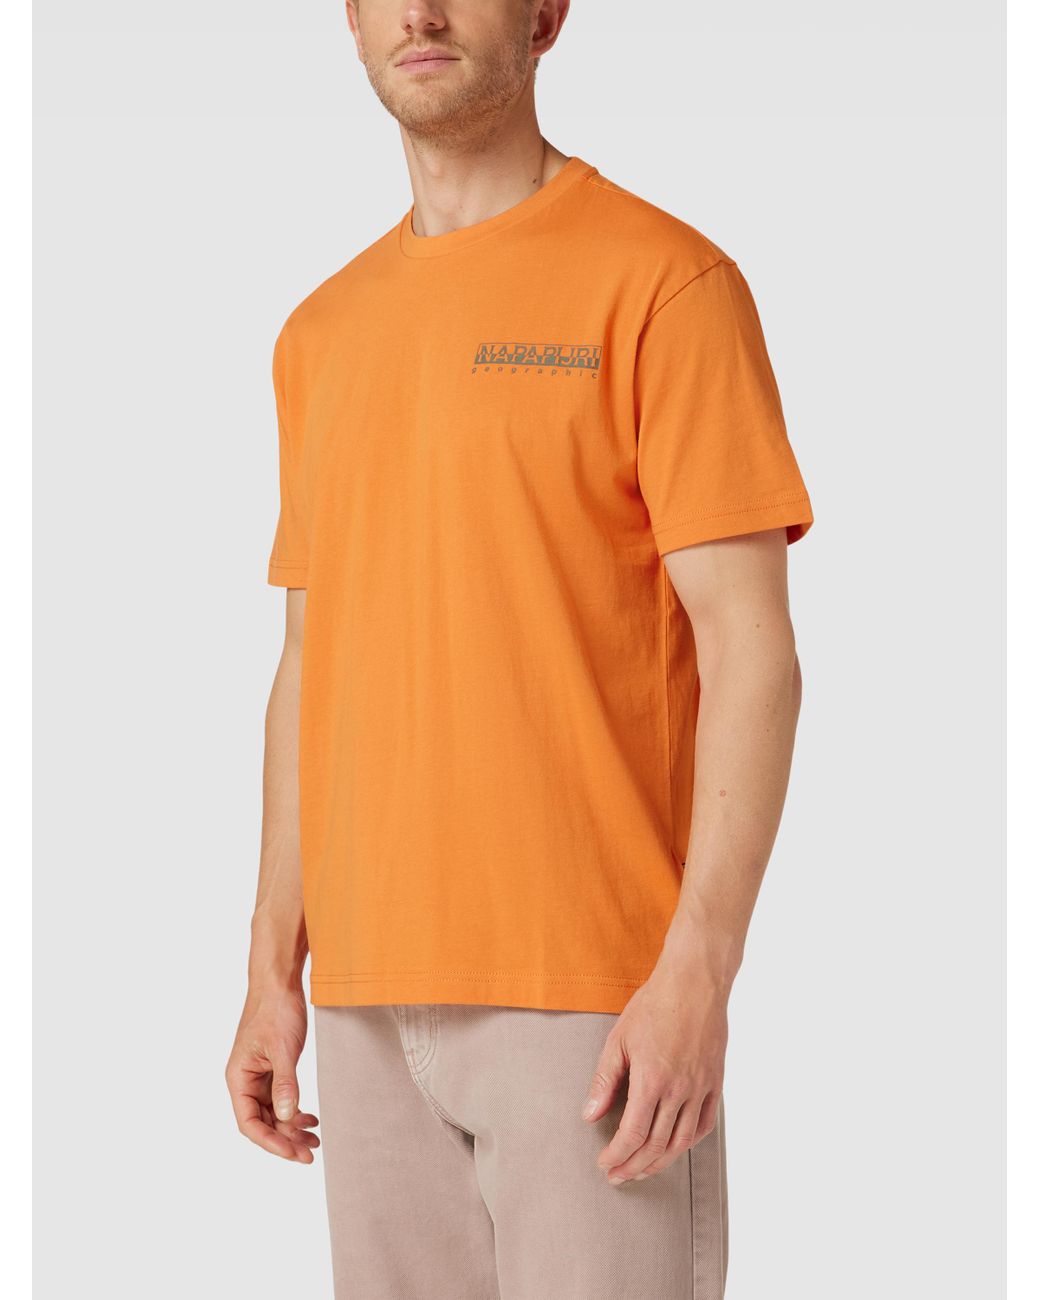 buitenste Verbeteren Saai Napapijri T-shirt Met Labelprint, Model 'pajas' in het Oranje voor heren |  Lyst NL